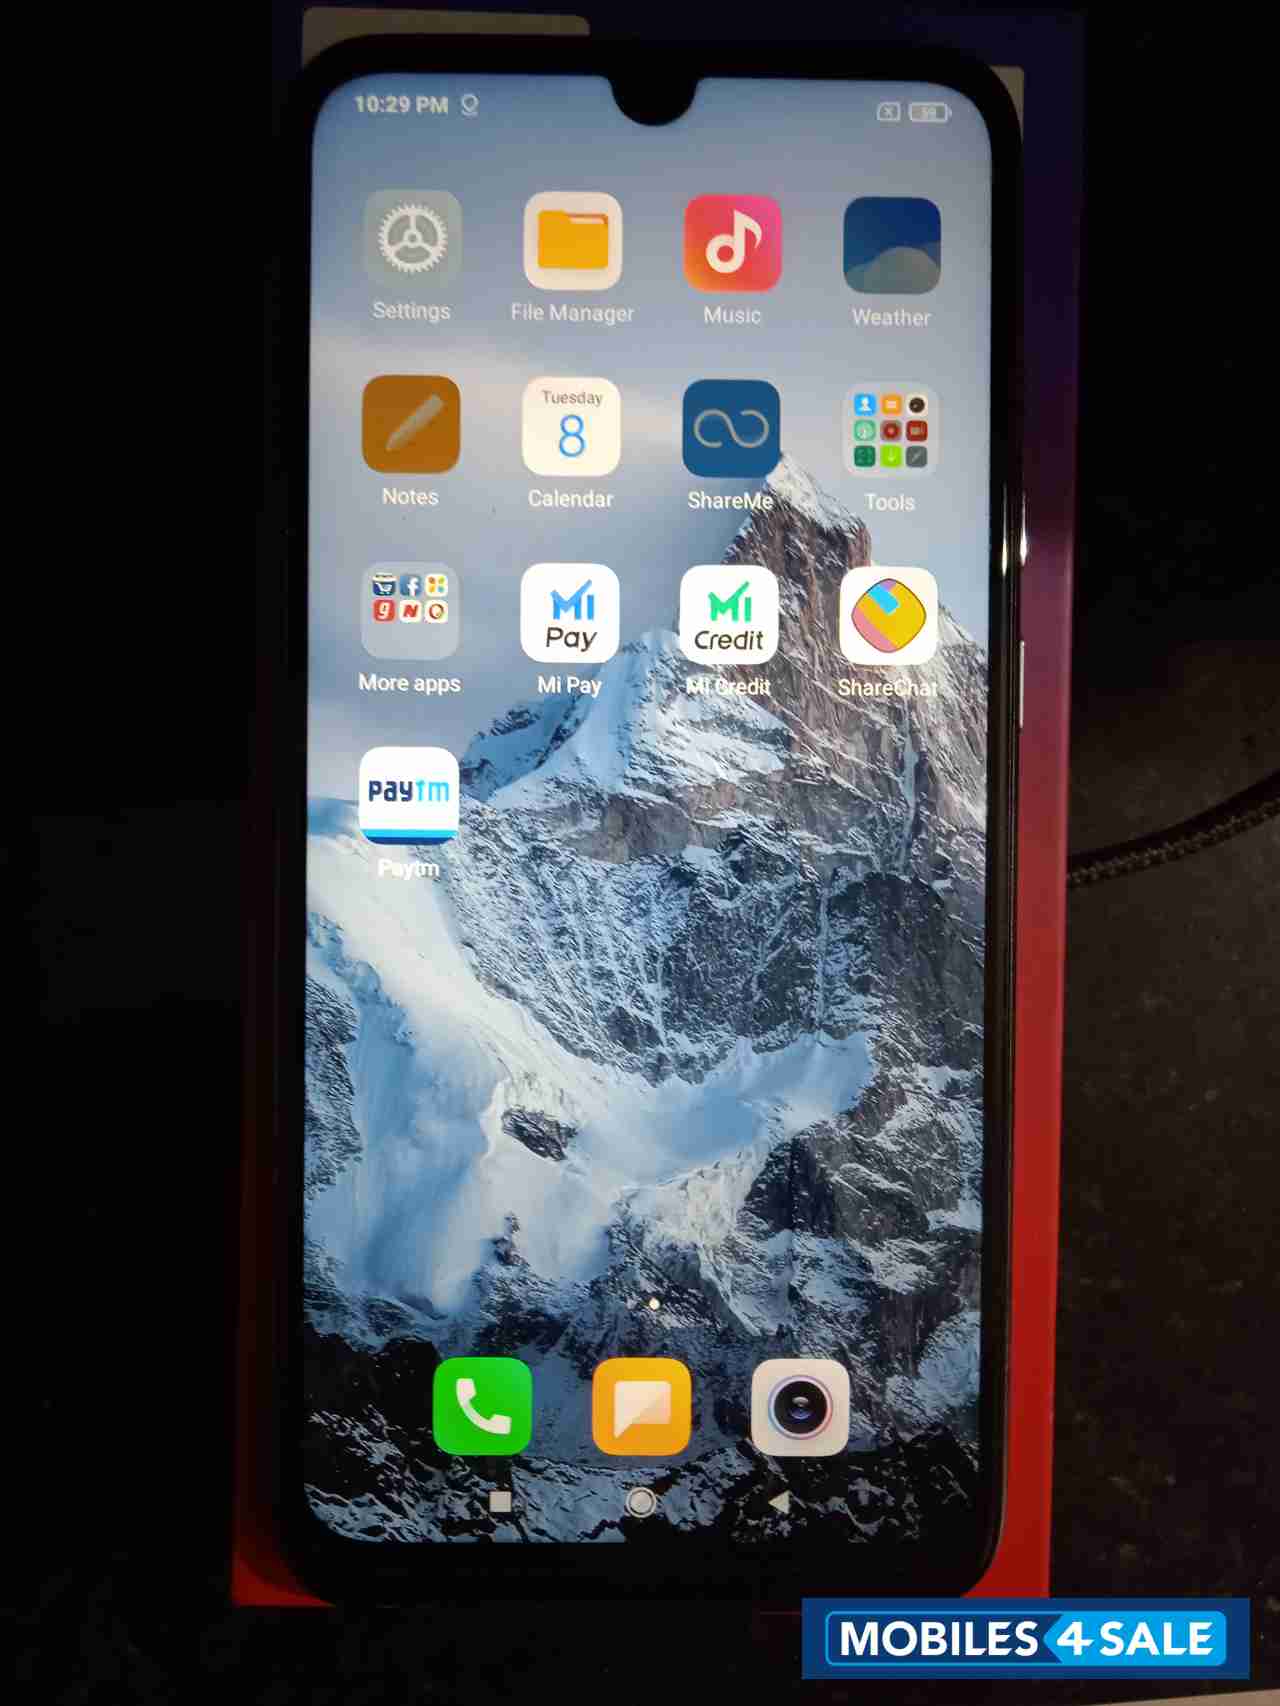 Xiaomi  Redmi note 7 pro